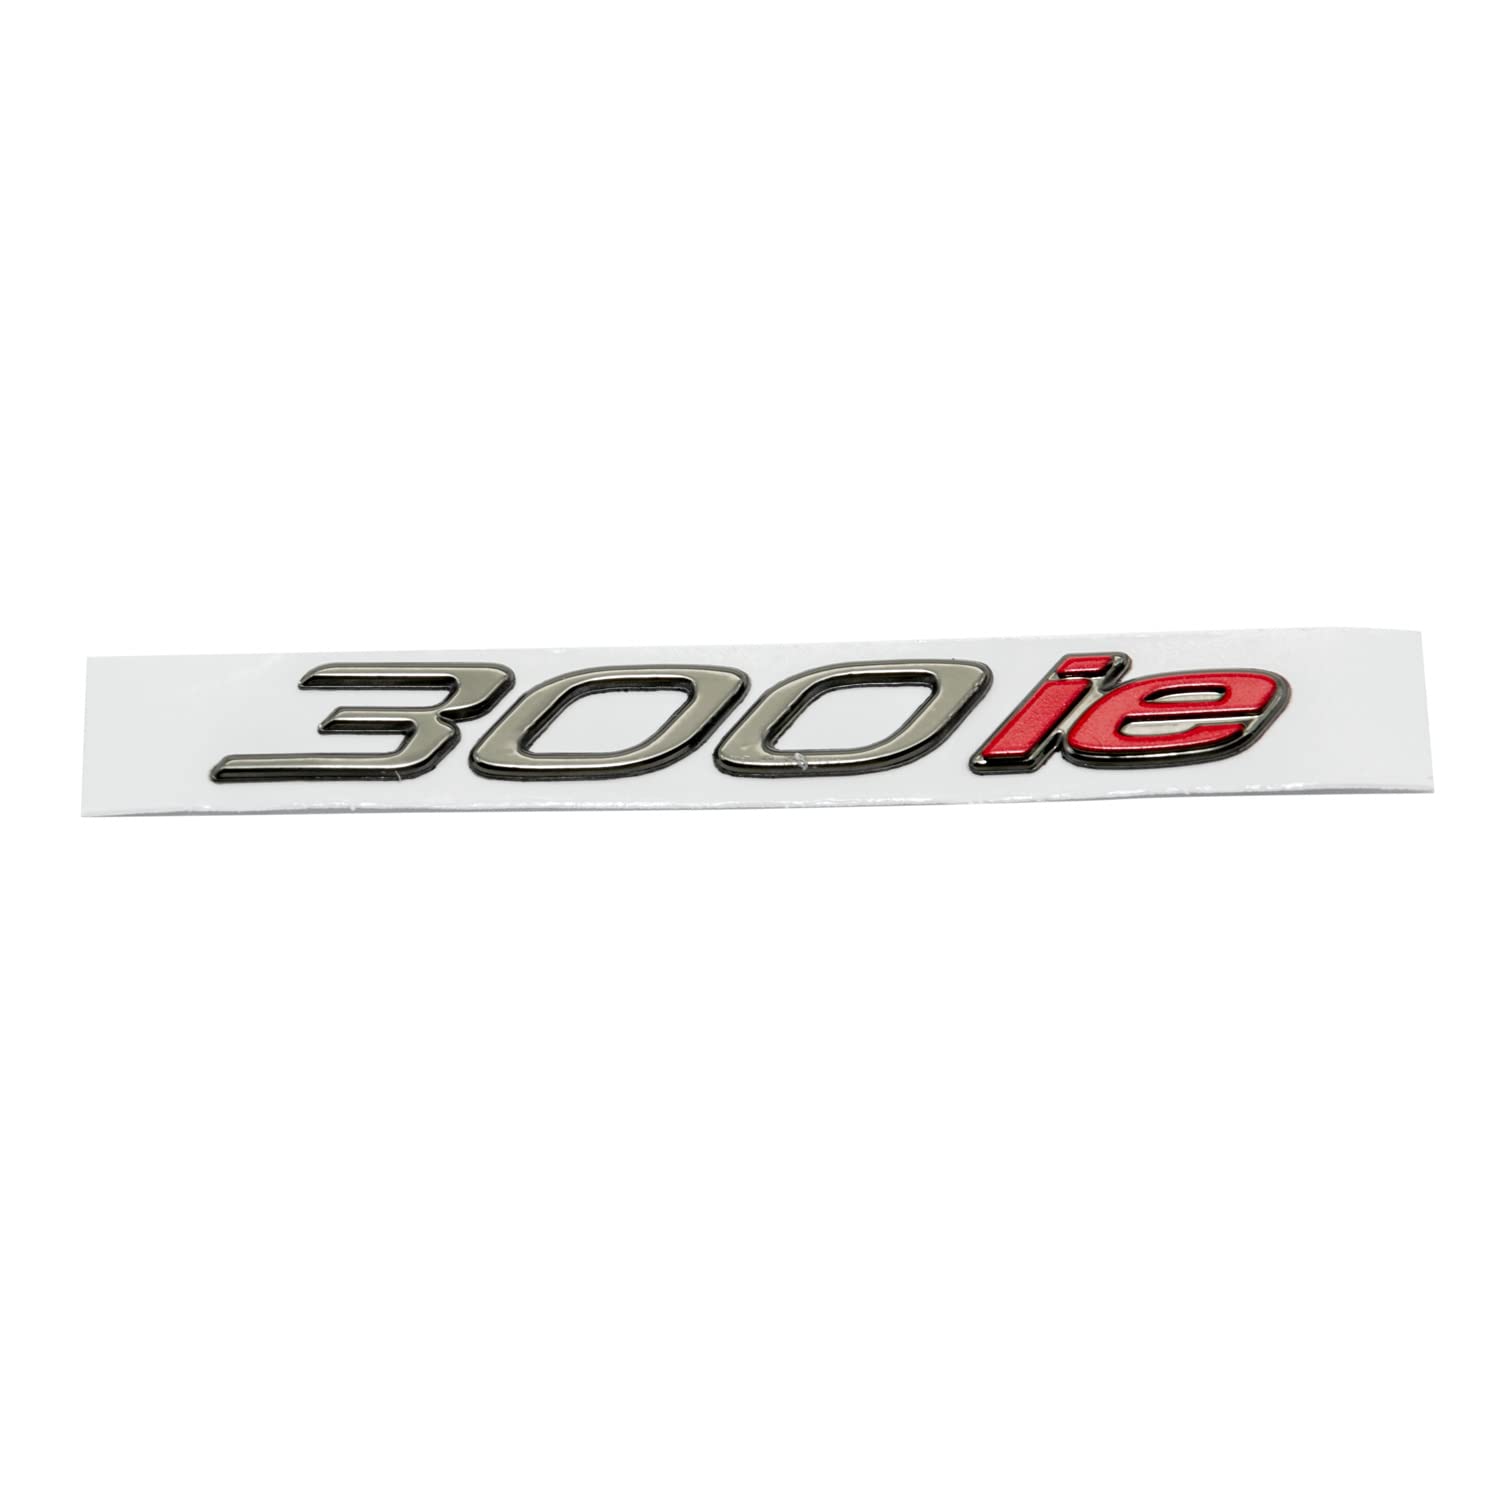 Dekor Piaggio Emblem, 300 i.e. für MP3, 672214 von Maxtuned